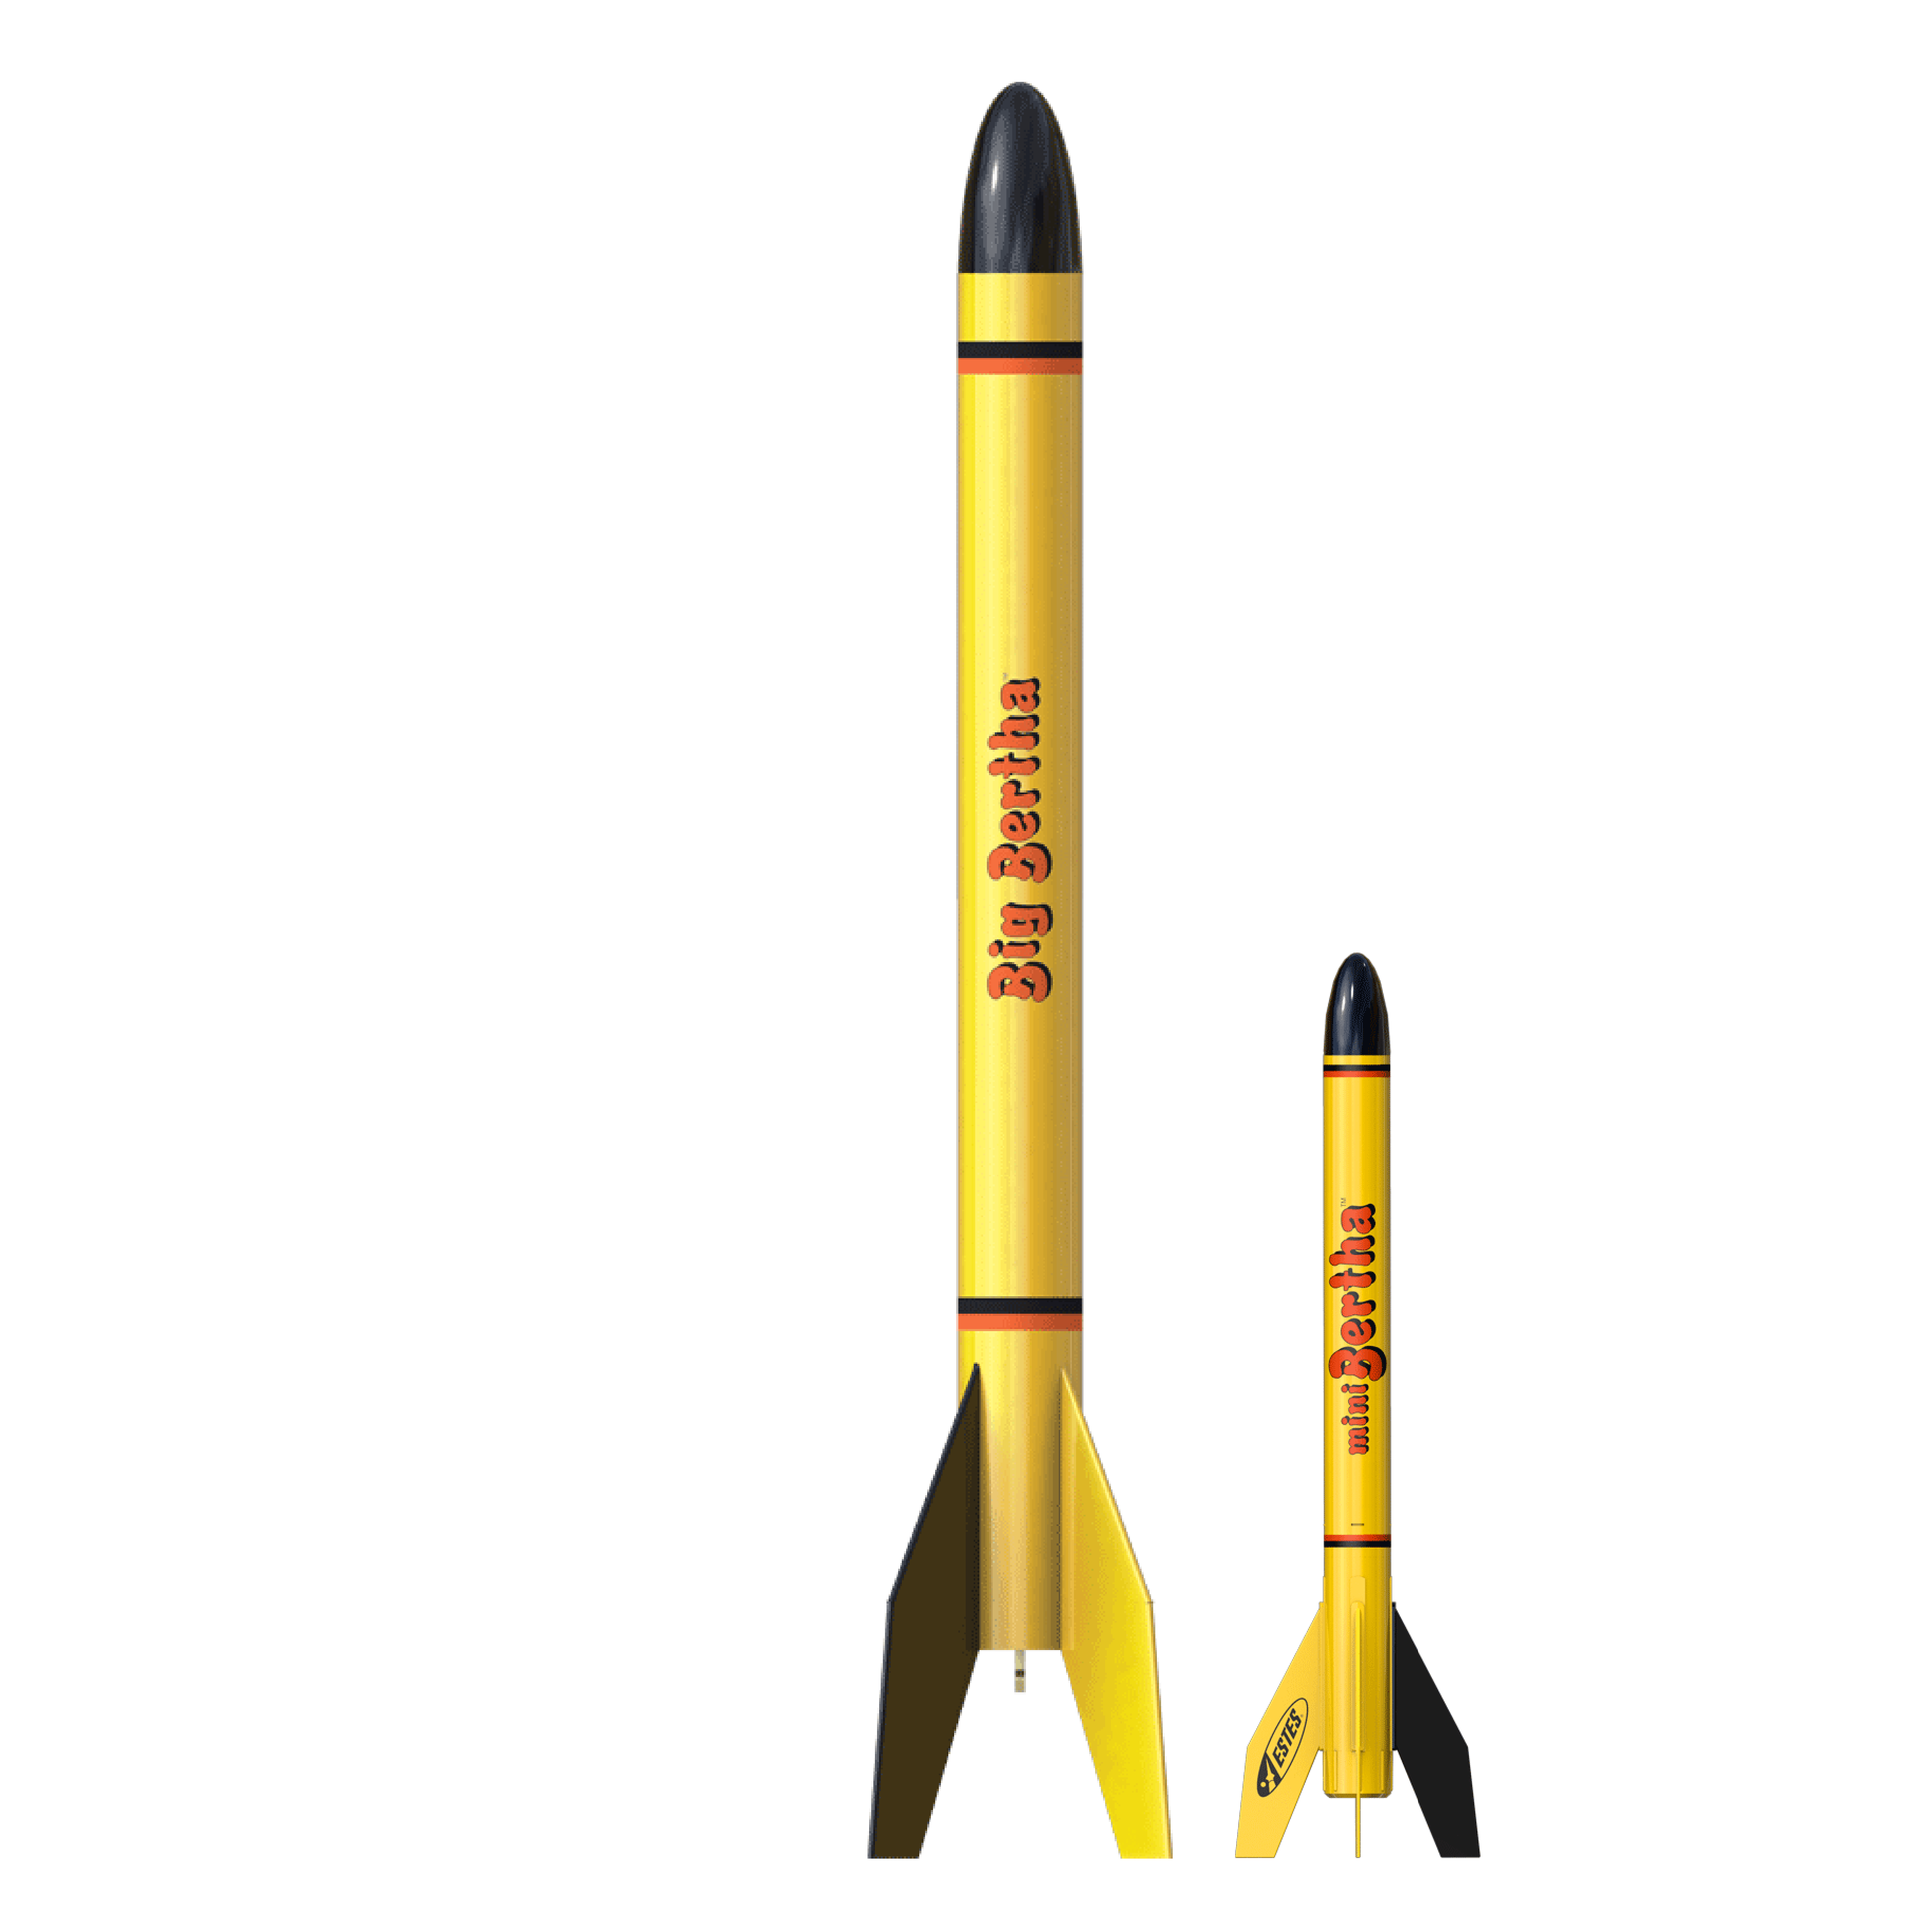 Estes Big and Mini Bertha Rockets